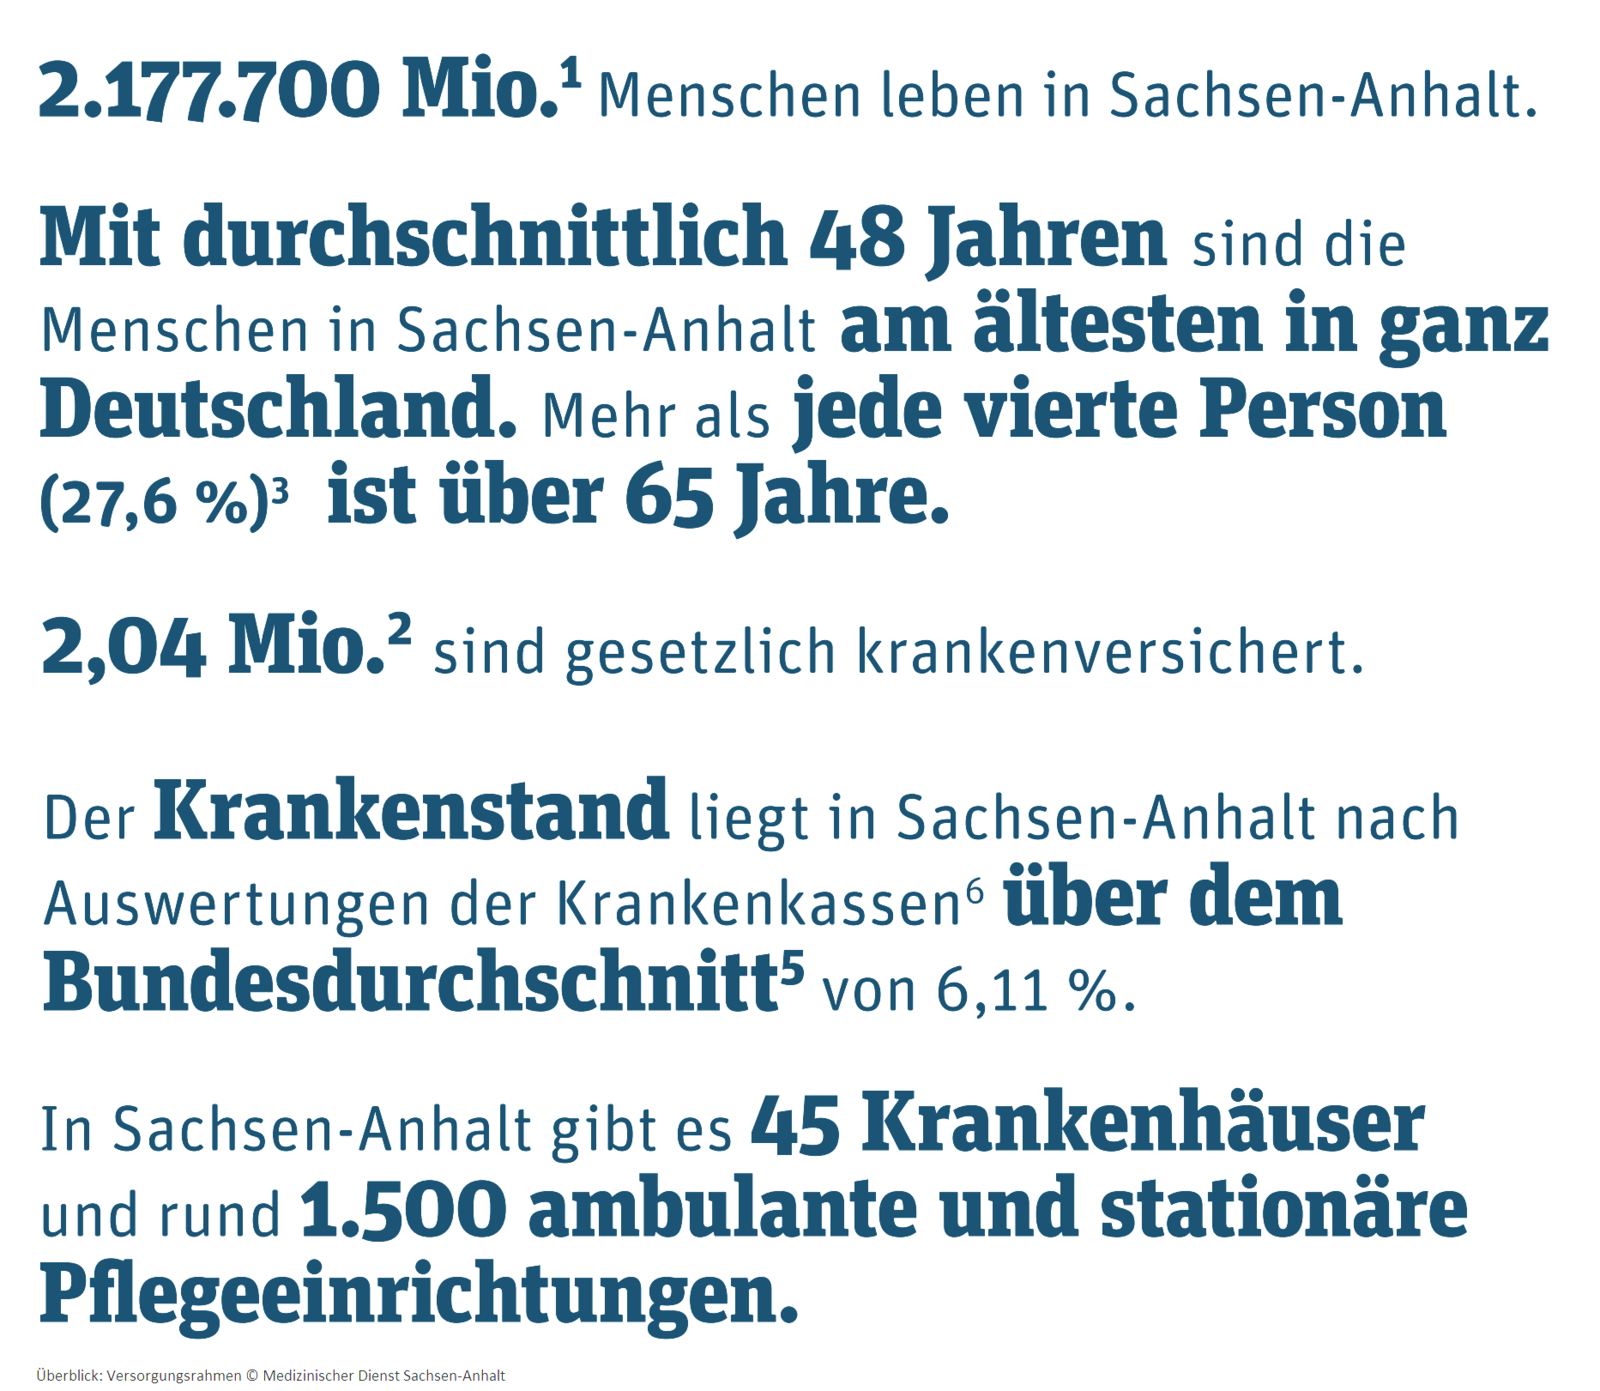 Bild: Versorgungsrahmen Sachsen-Anhalt mit Einwohnerzahl, Altersdurchschnitt, Krankenversicherten, Arbeitsunfähigkeiten, Krankenhäusern und Pflegeeinrichtungen